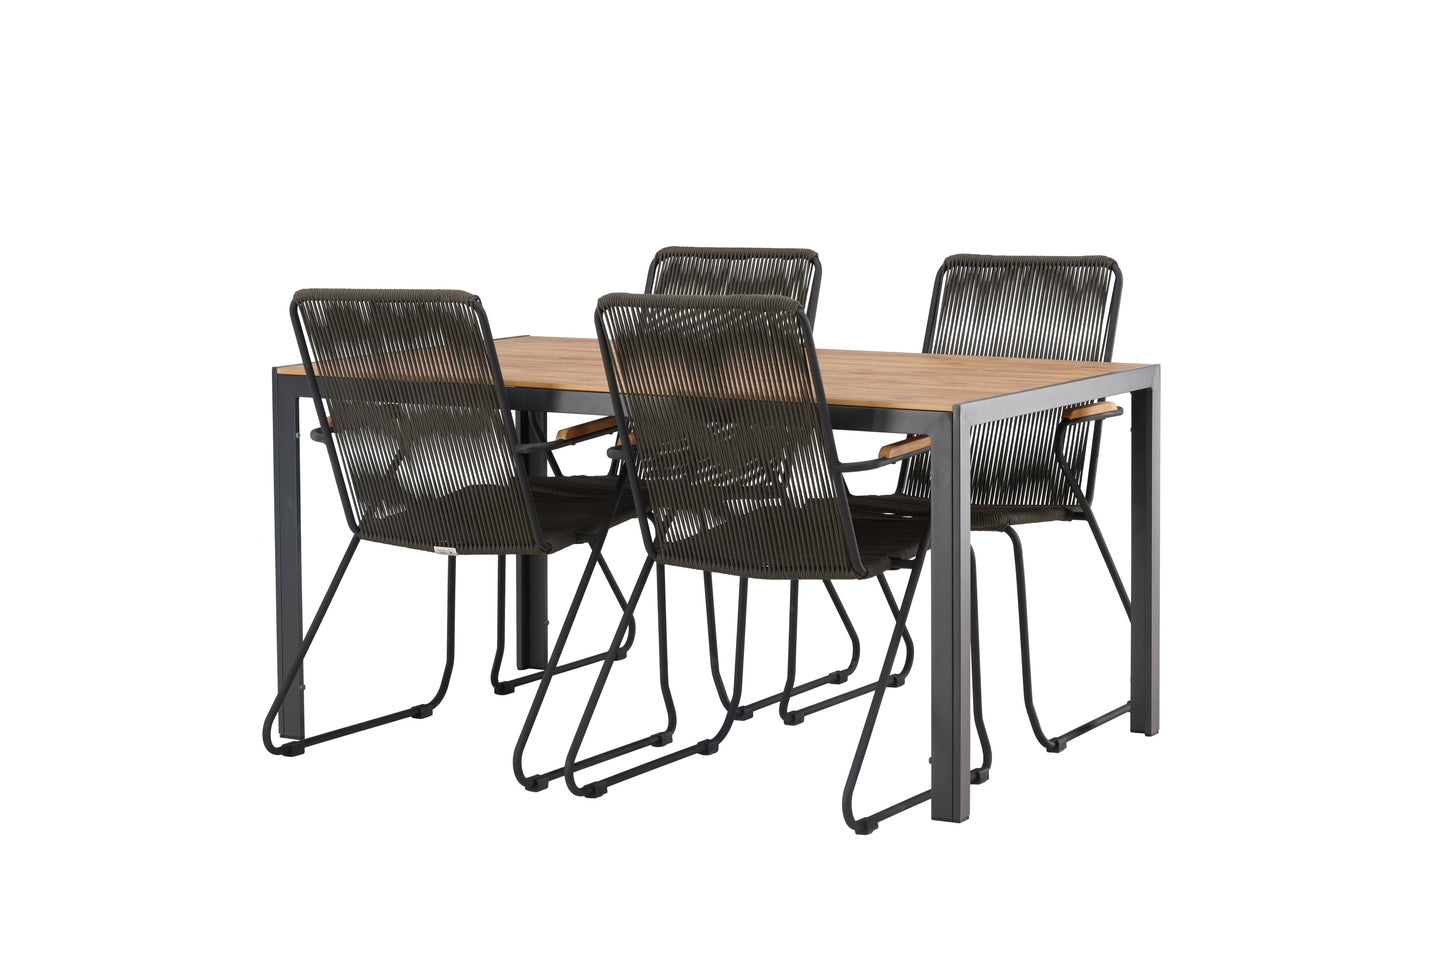 Break - Spisebord, Aluminium - Sort / Natur Rektangulær 90*150* + Bois stol Stål - Sort / Mørkegråt Reb